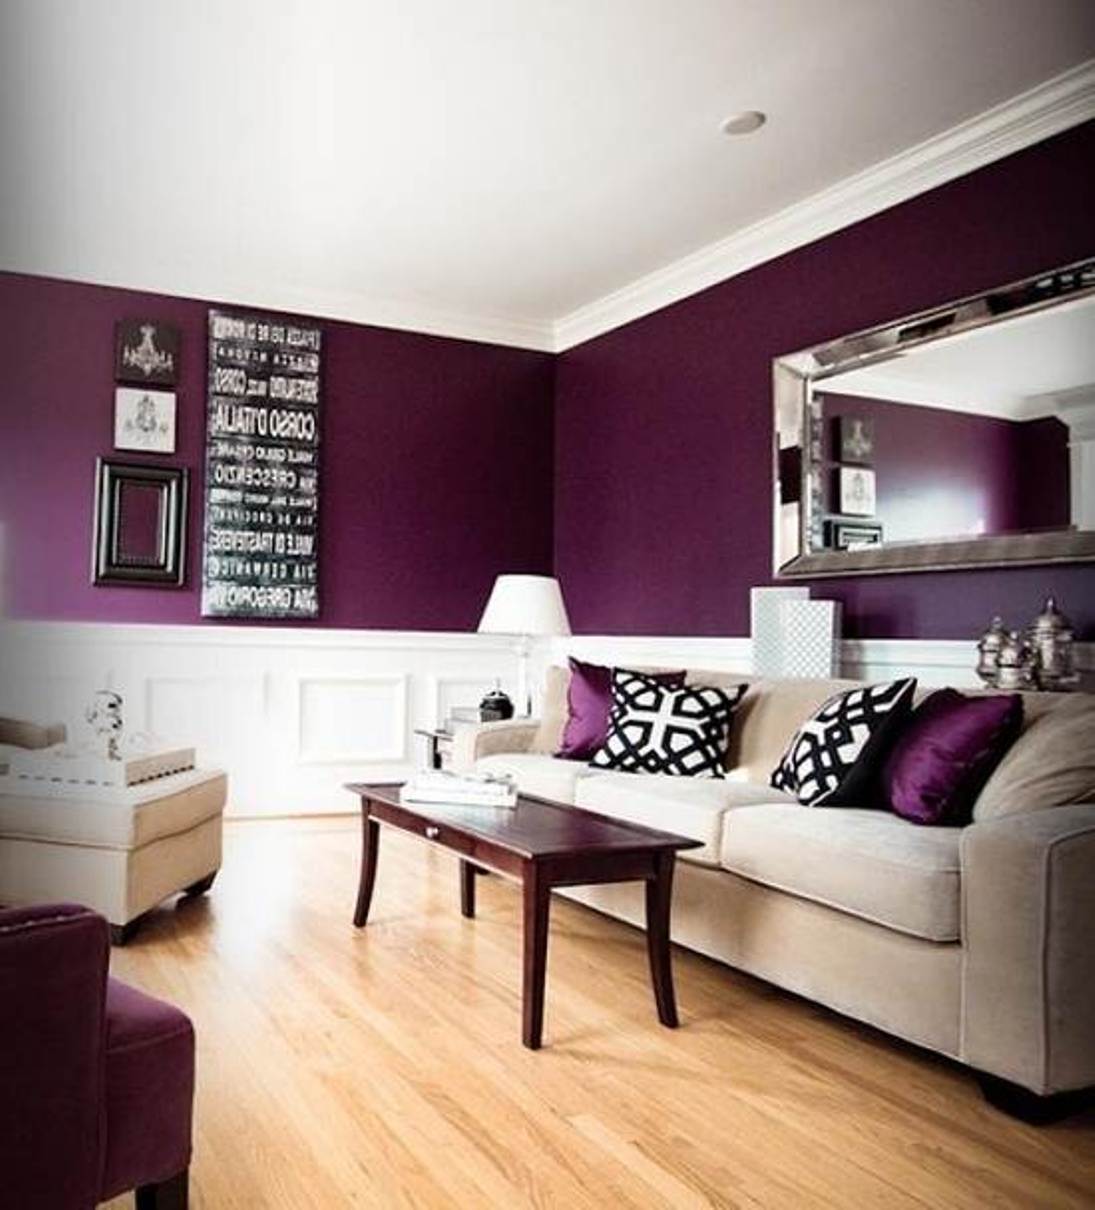 Farbgestaltung wohnzimmer mit Sofa beige und holzcouchtisch-Wandgestaltungsidee mit Spiegel und schwarzen Bildrahmen